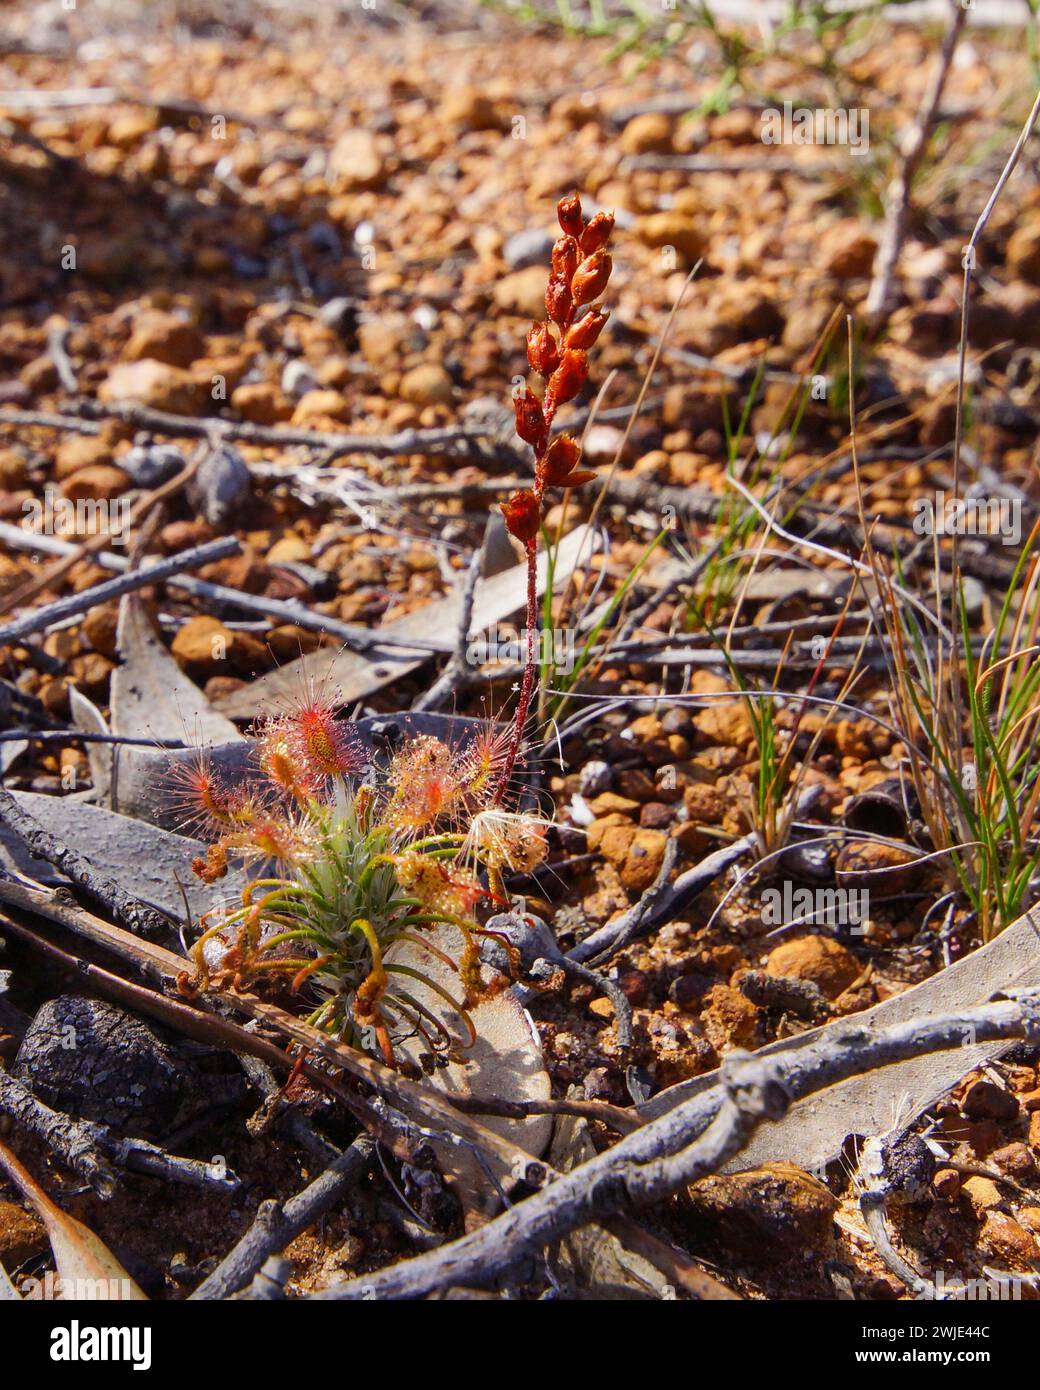 Rugiada pigmeo carnivora (Drosera scorpioides) con foglie appiccicose e gambi di fiori, nell'habitat naturale dell'Australia Occidentale Foto Stock